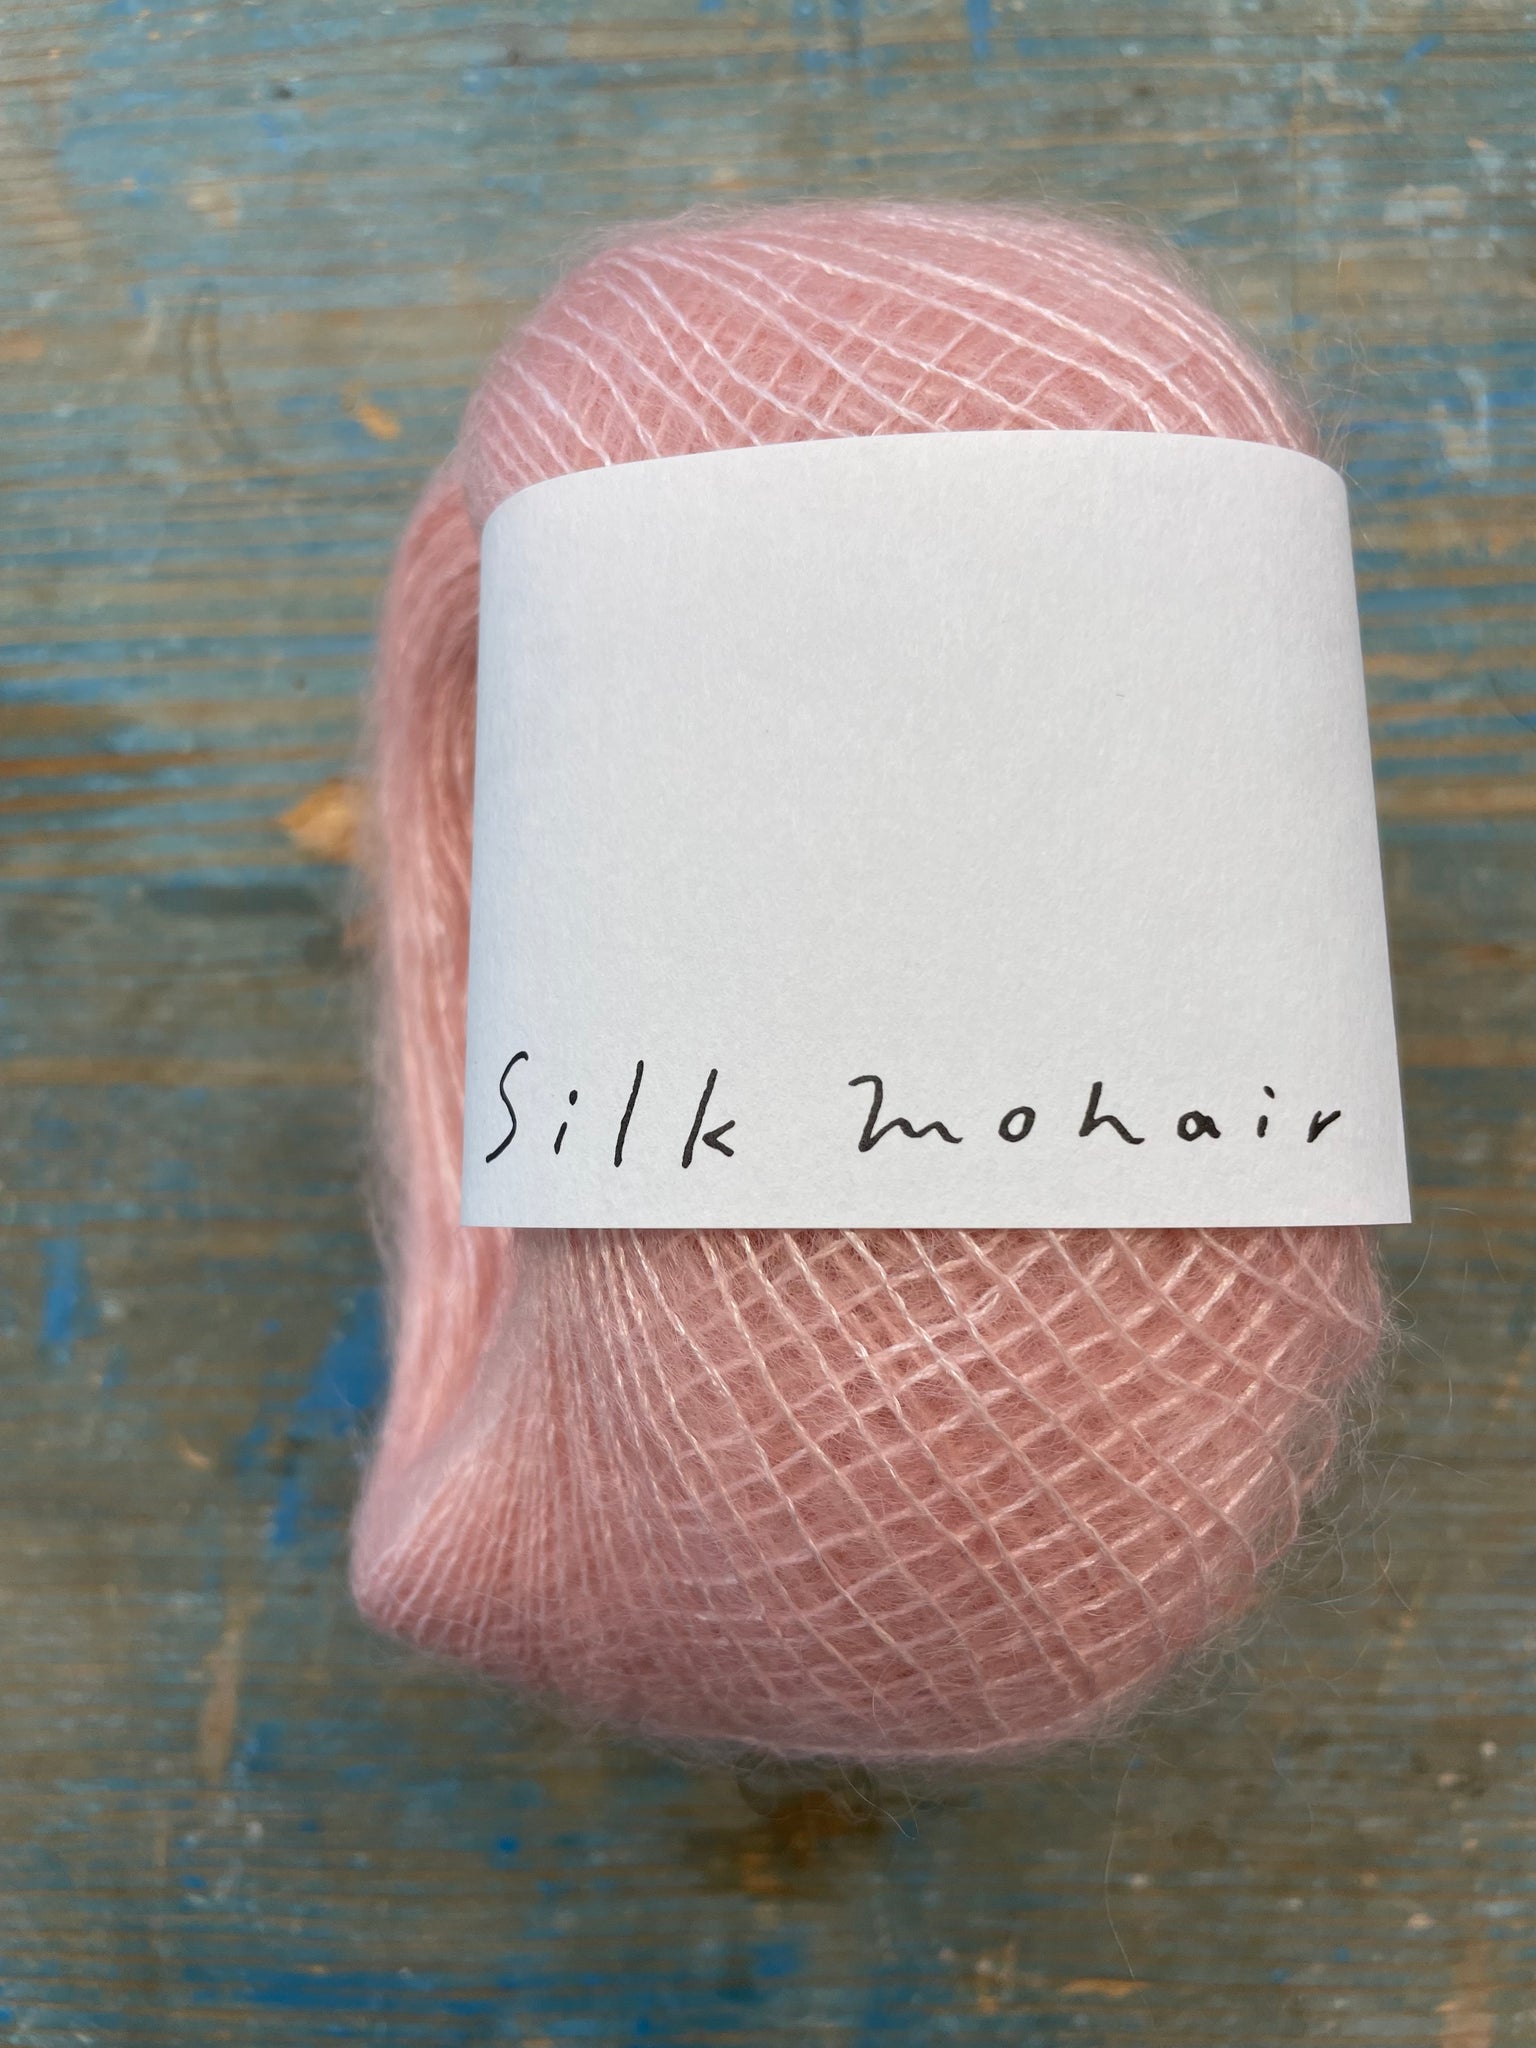 Daruma Silk Mohair Yarn - Apricot Yarn & Supply